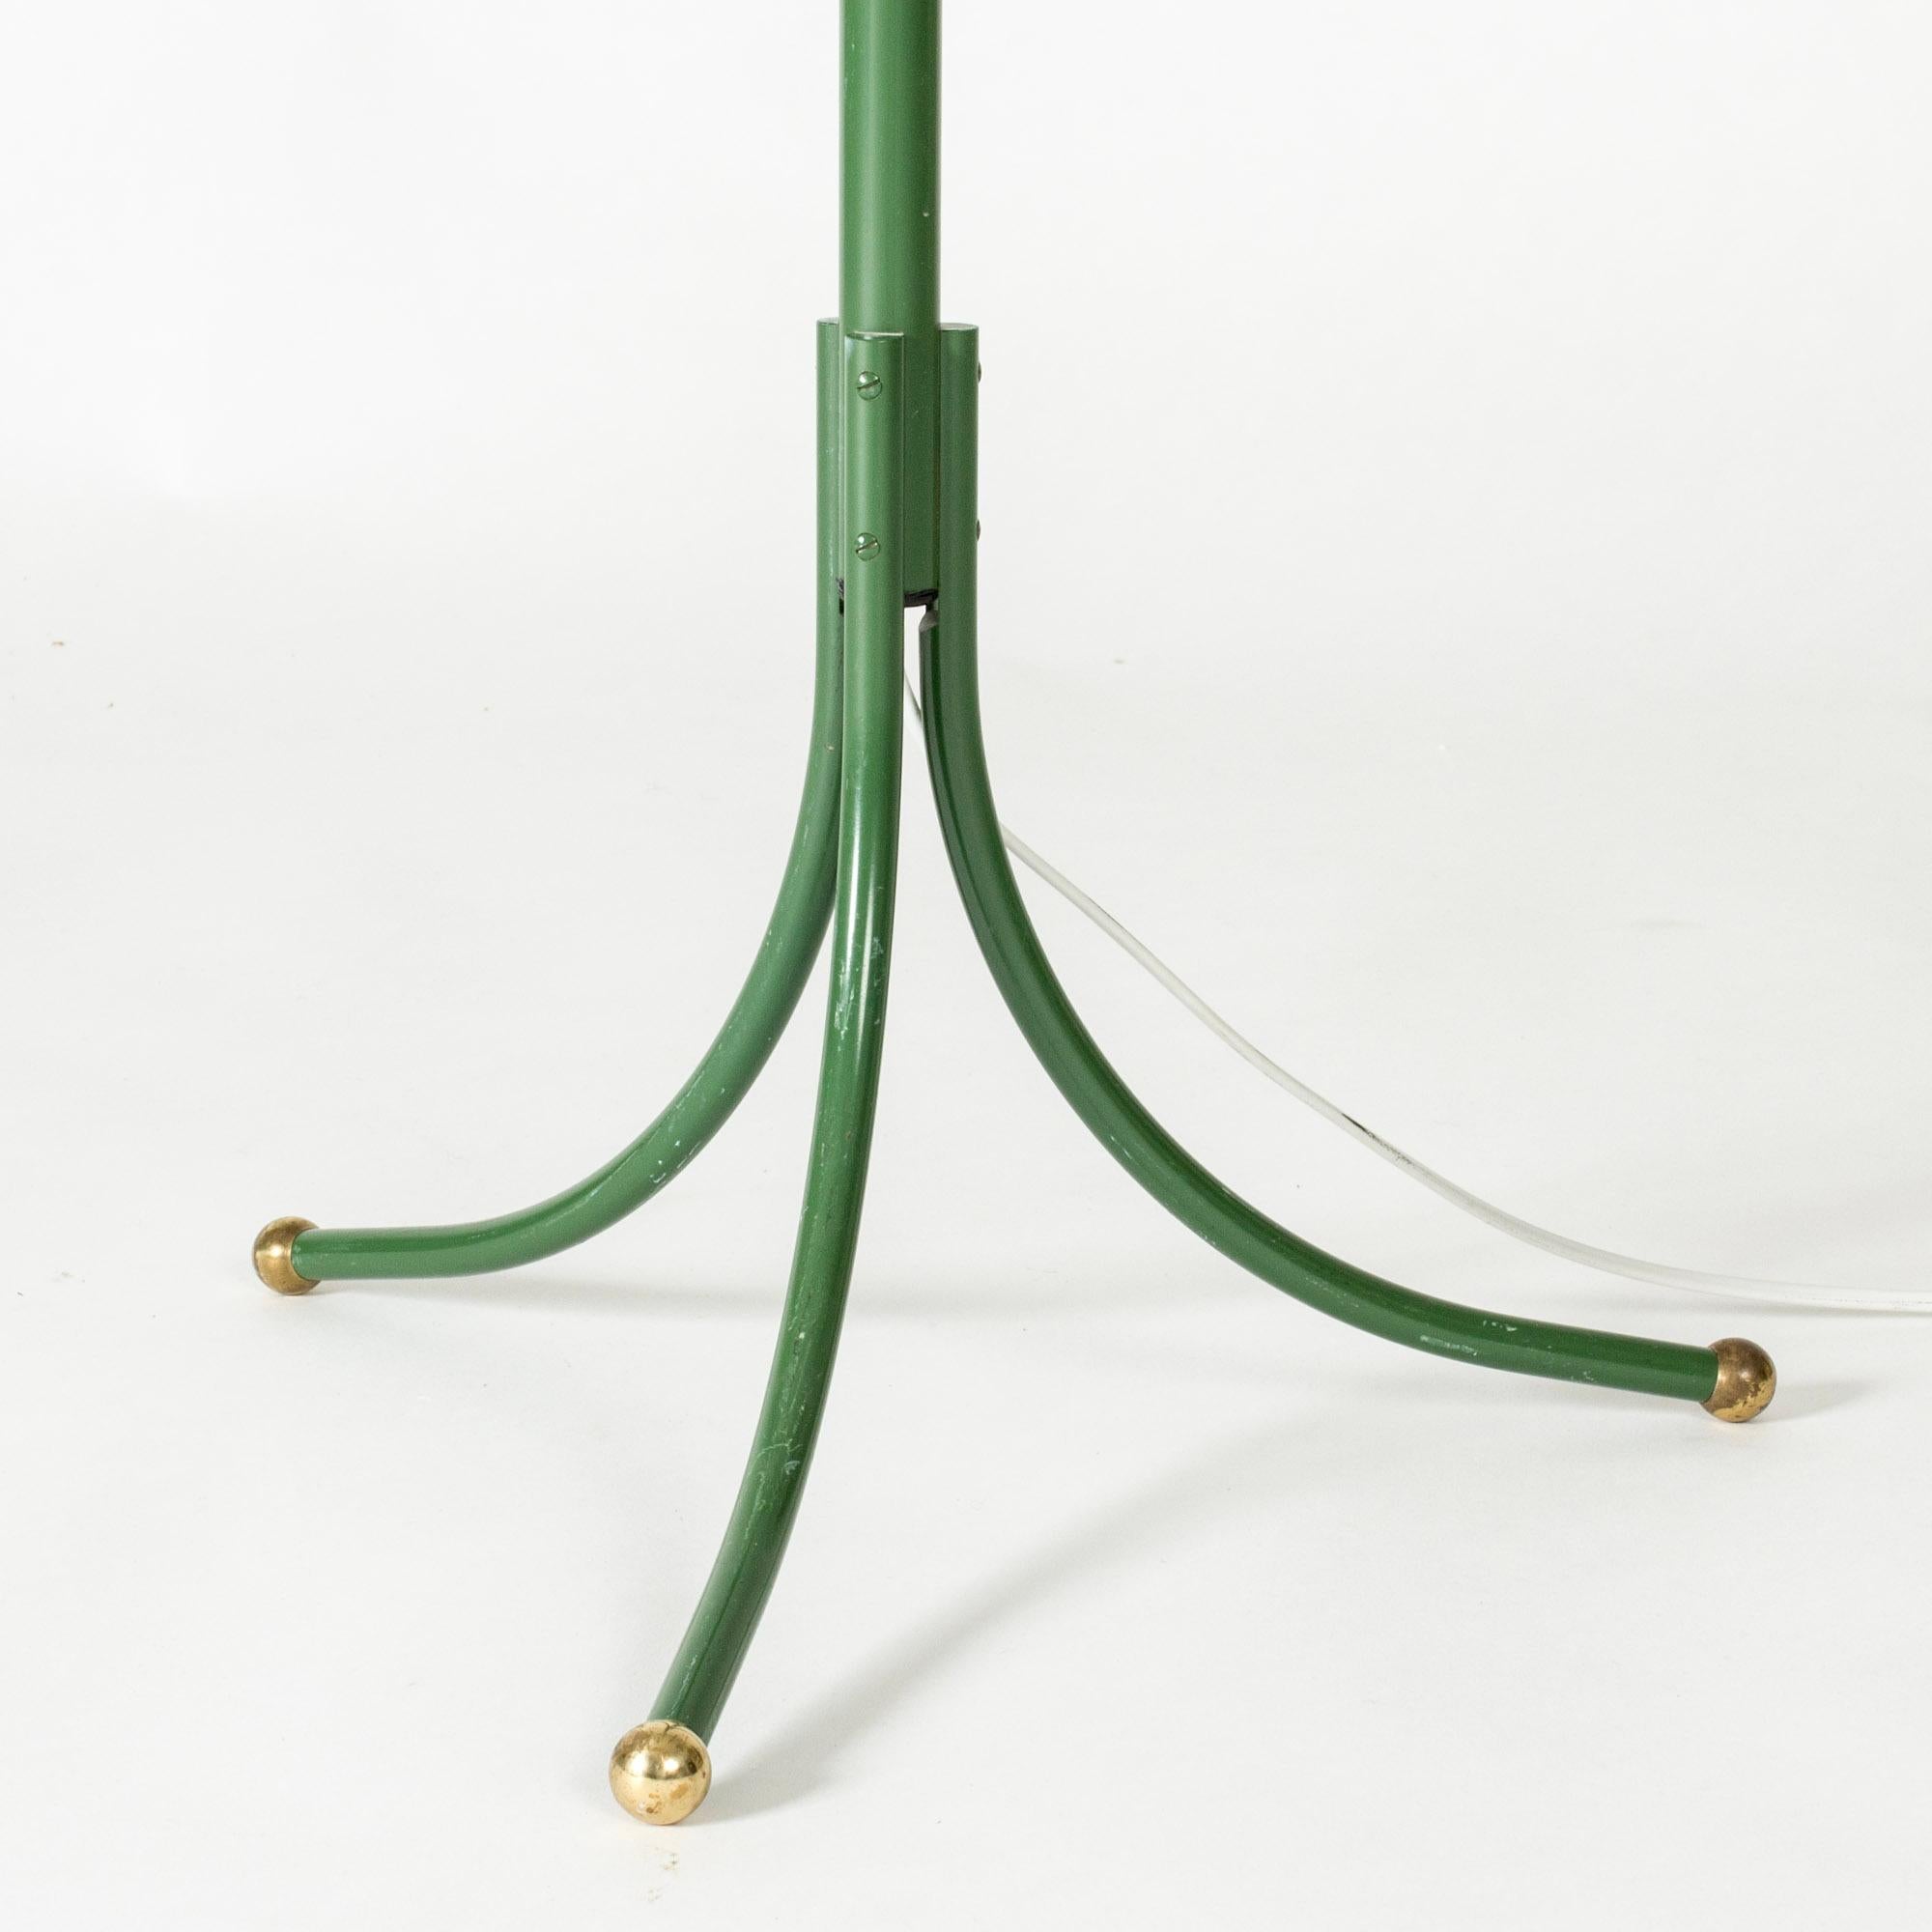 Mid-20th Century Brass Floor Lamp model #1842 by Josef Frank for Svenskt Tenn, Sweden, 1950s